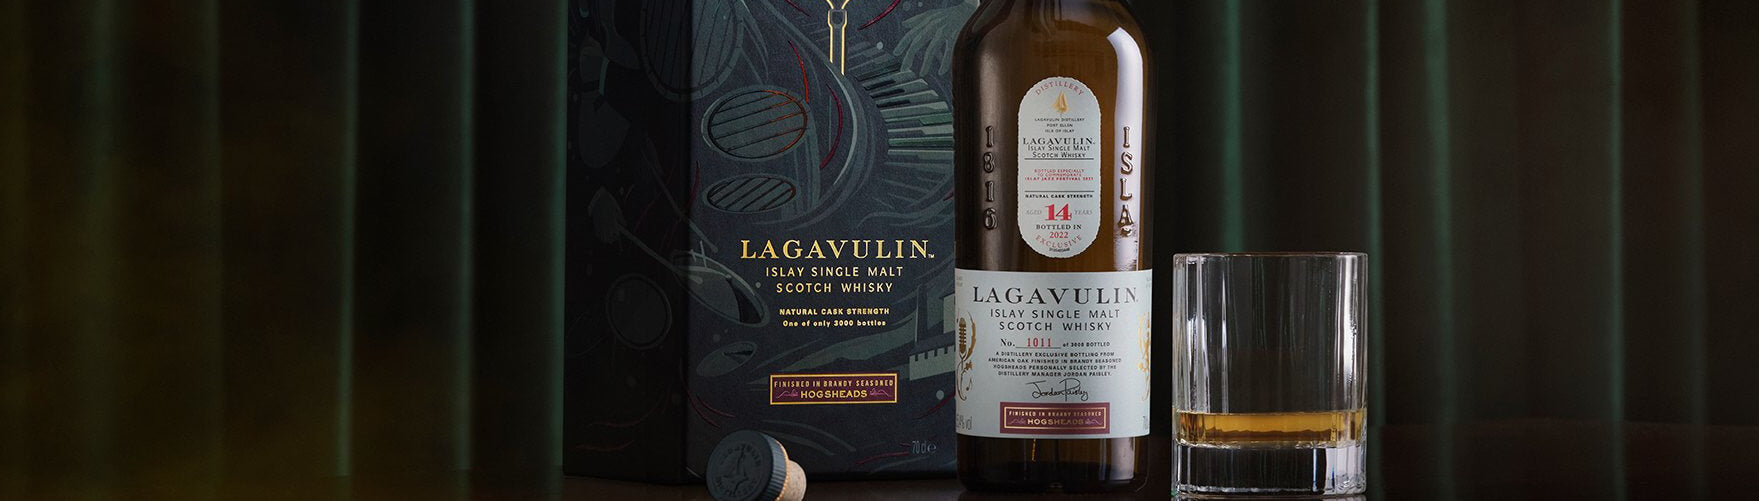 Buy Lagavulin Whisky Online